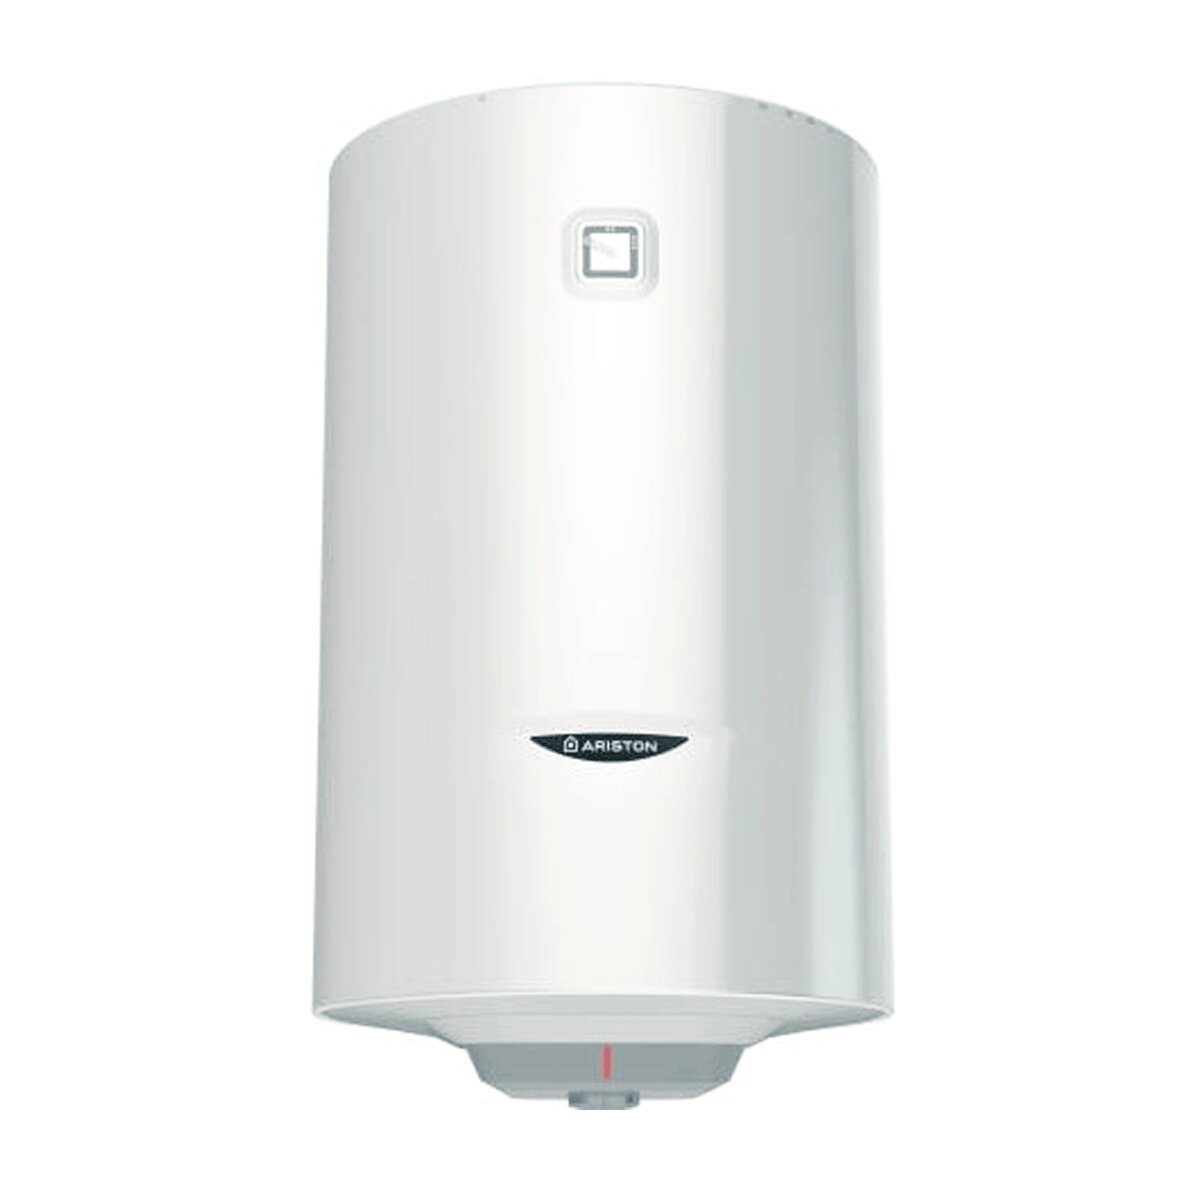 Ariston Pro1 R Vertikaler elektrischer Warmwasserbereiter 80 Liter